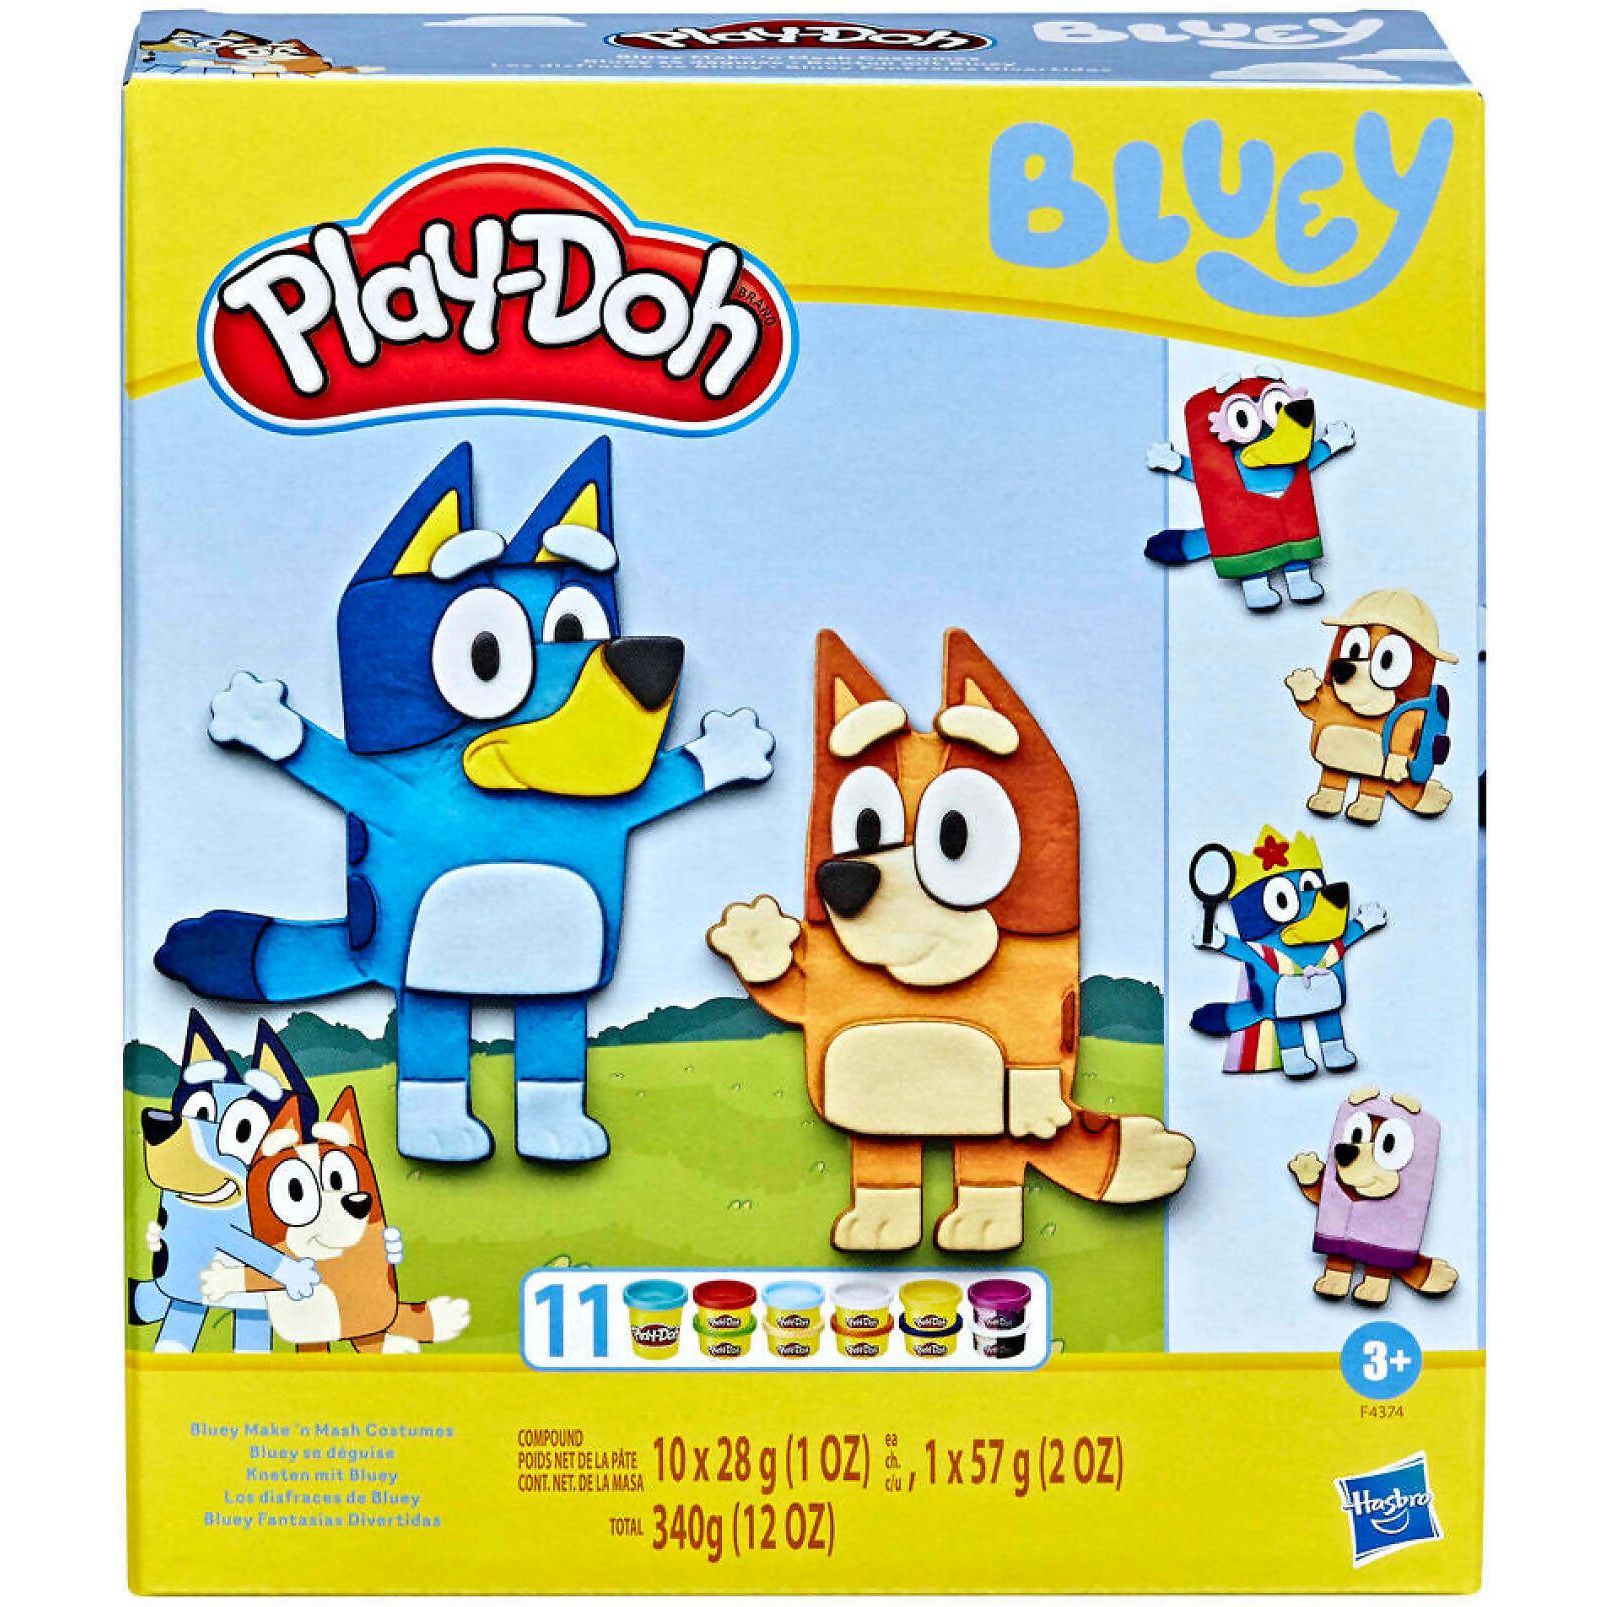 Набор Play-Doh Bluey Make N Mash Costumes игровой, для лепки, F43745L0 набор для опытов создай свою помаду make up в пакете